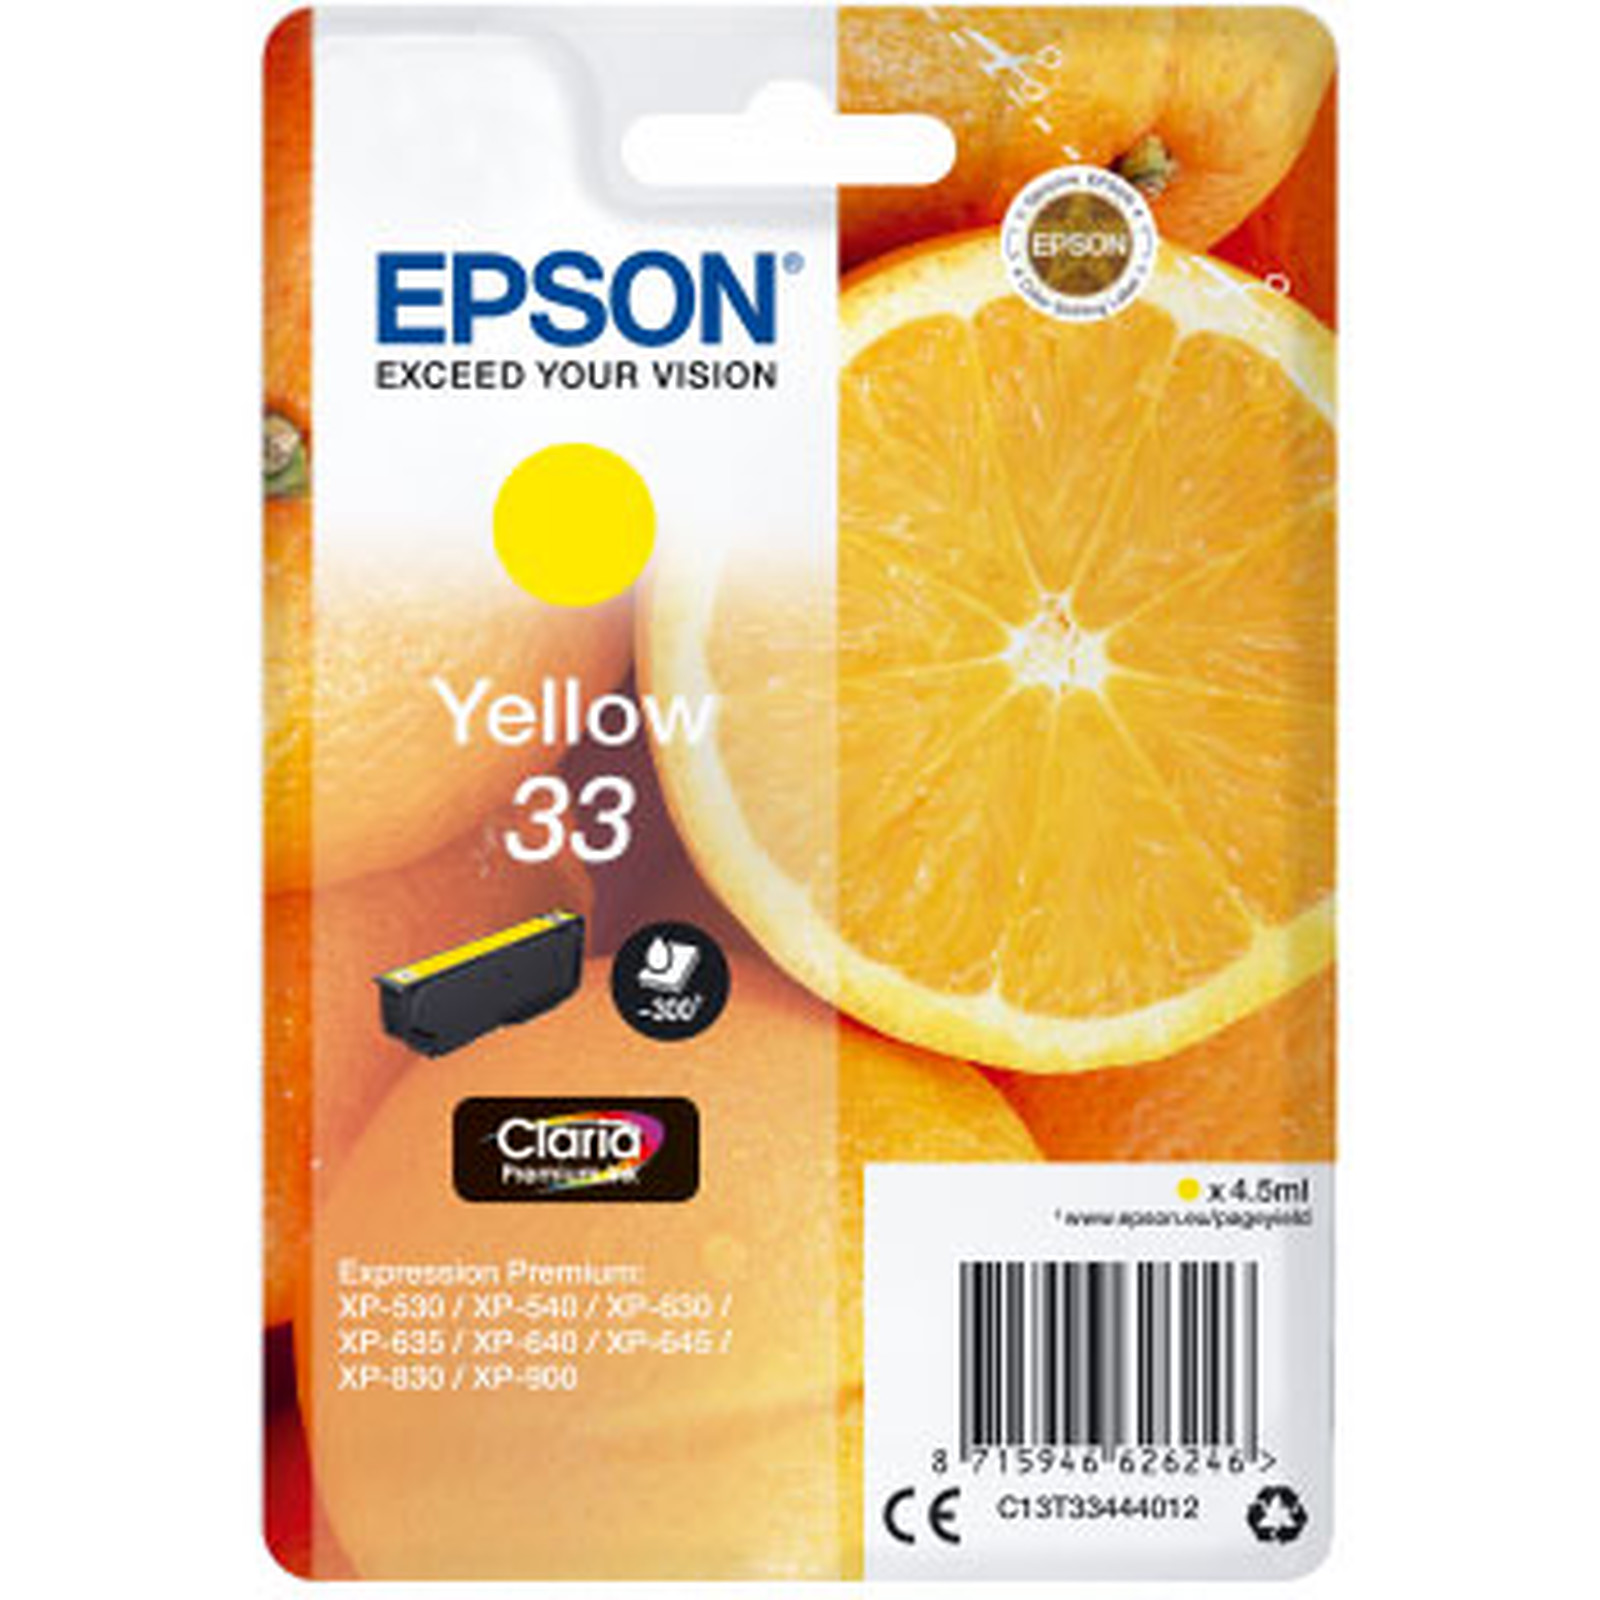 Epson Oranges 33 Jaune - Cartouche imprimante Epson